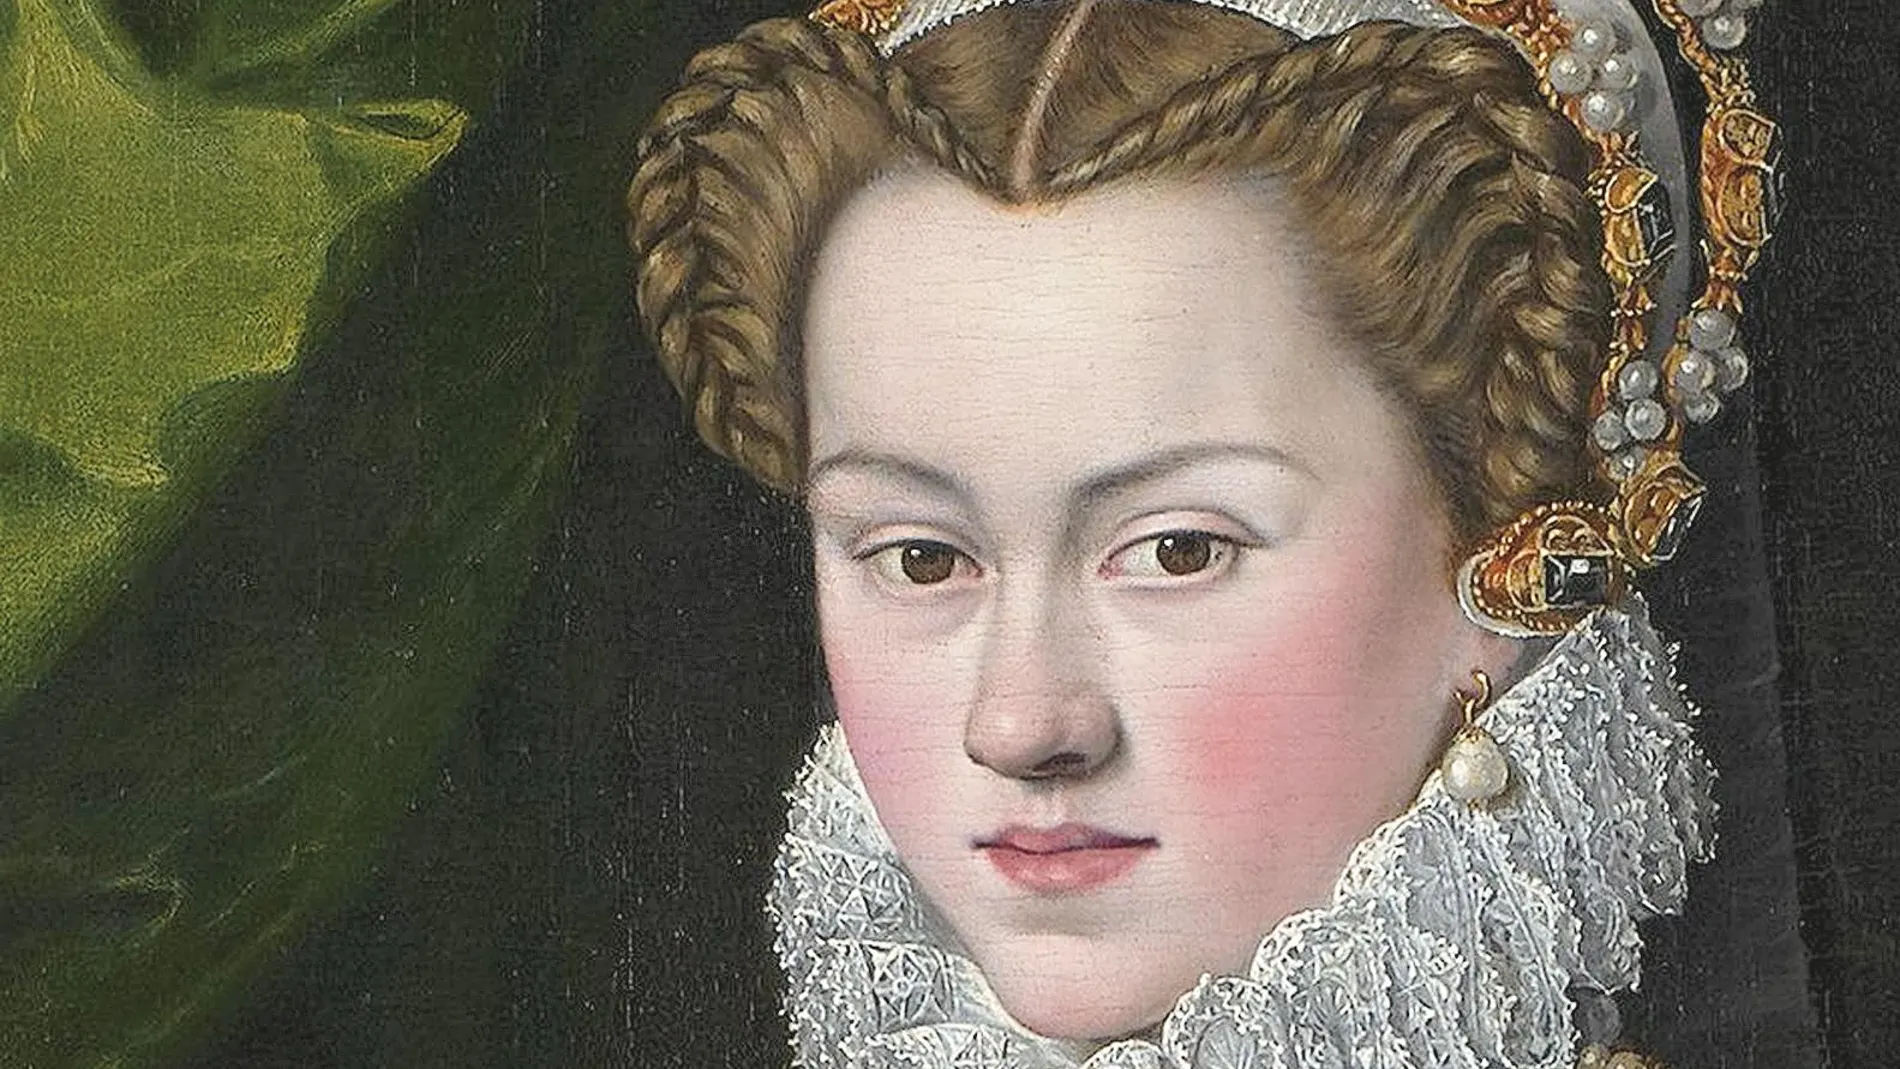 En el exilio, Isabel siempre apoyó a Cristian II de Dinamarca. Incluso capitaneó las entrevistas con Enrique VIII y su tía Catalina